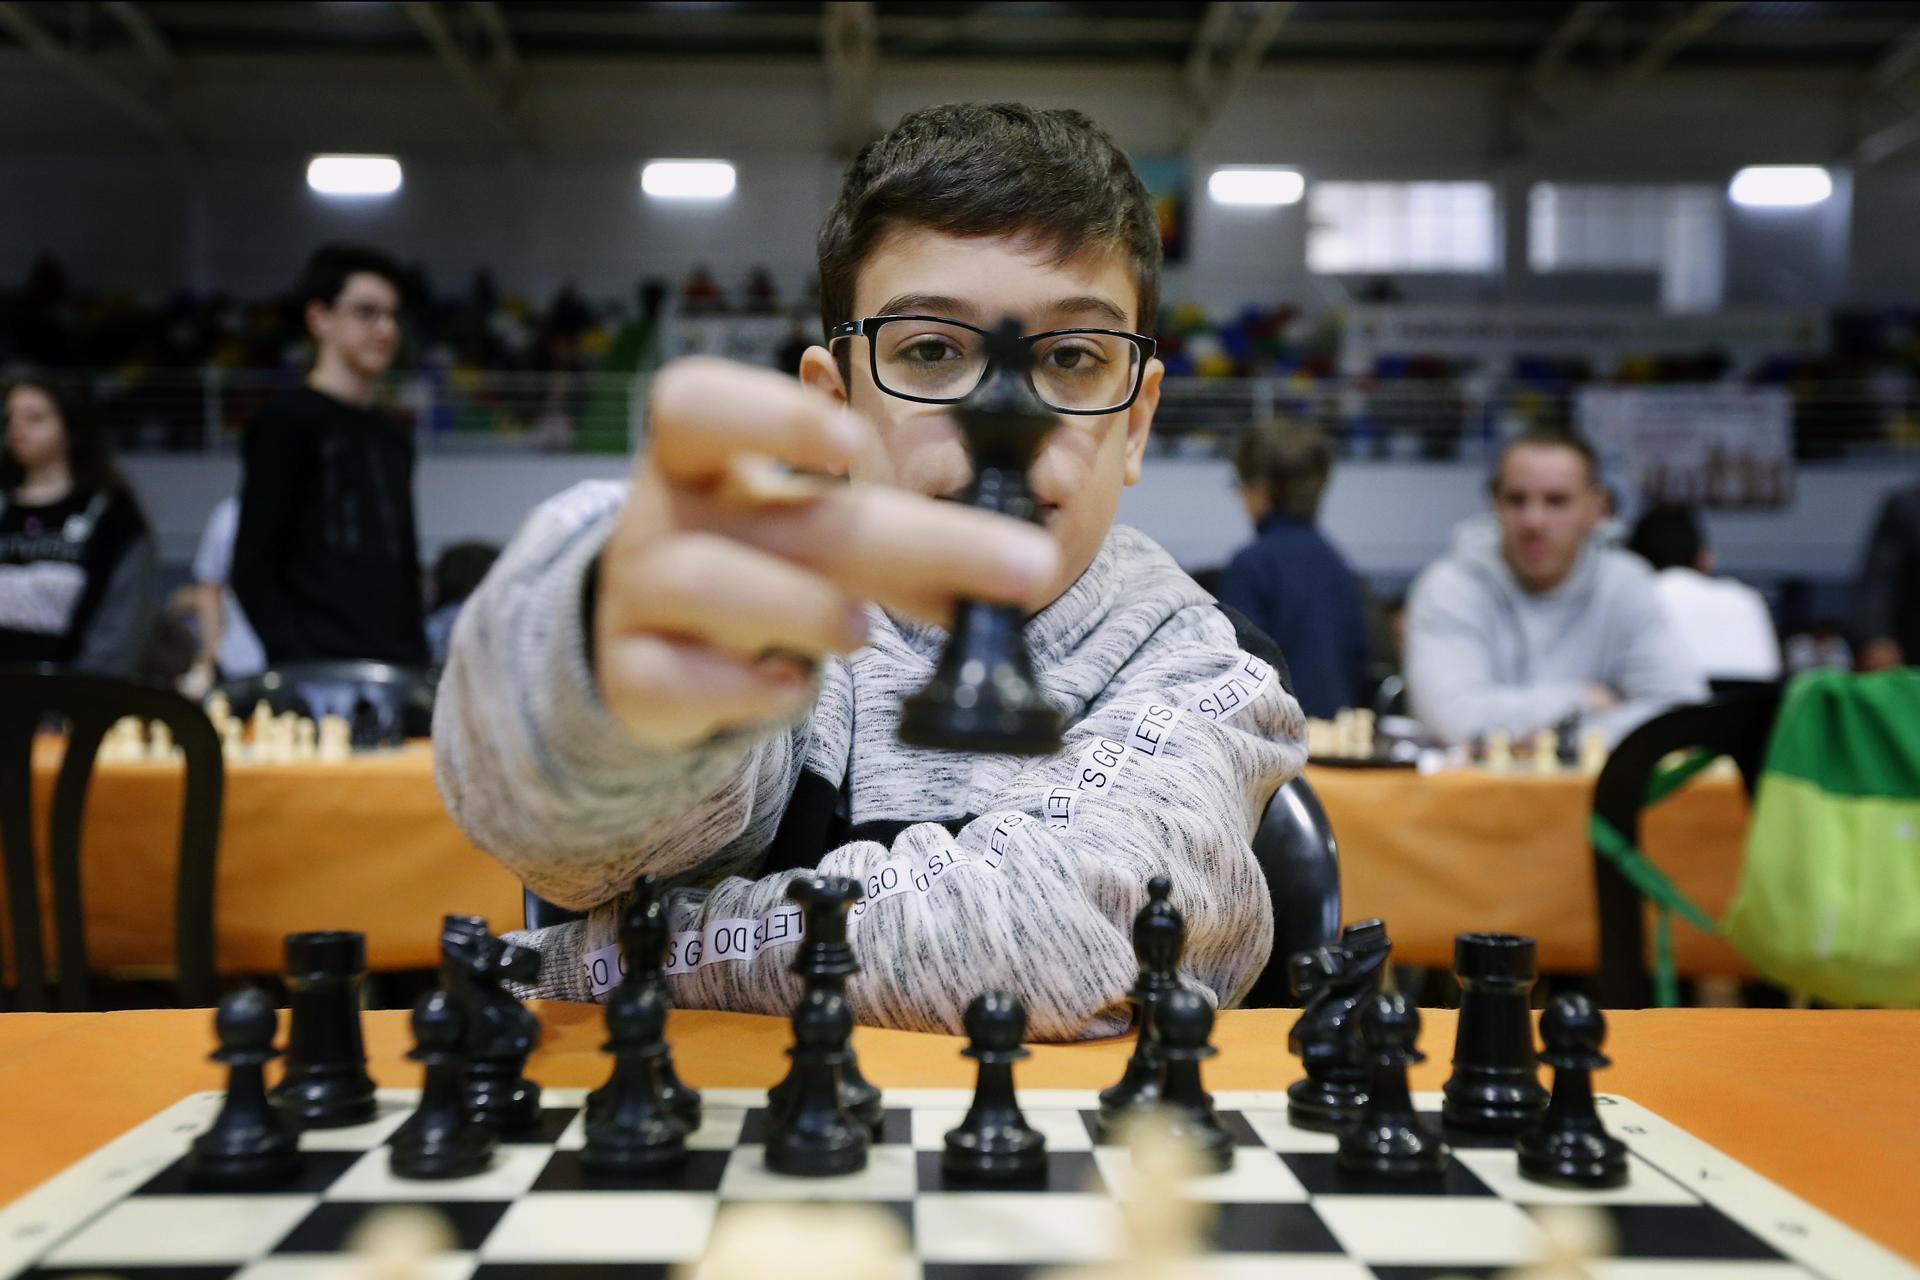 El jugador argentino de ajedrez, Faustino Oro, de 10 años de edad, aseguró este lunes a EFE que sueña con llegar a ser campeón del Mundo, si bien precisó que para alcanzar este objetivo le queda mucho que aprender y mejorar. EFE/ Manuel Lorenzo